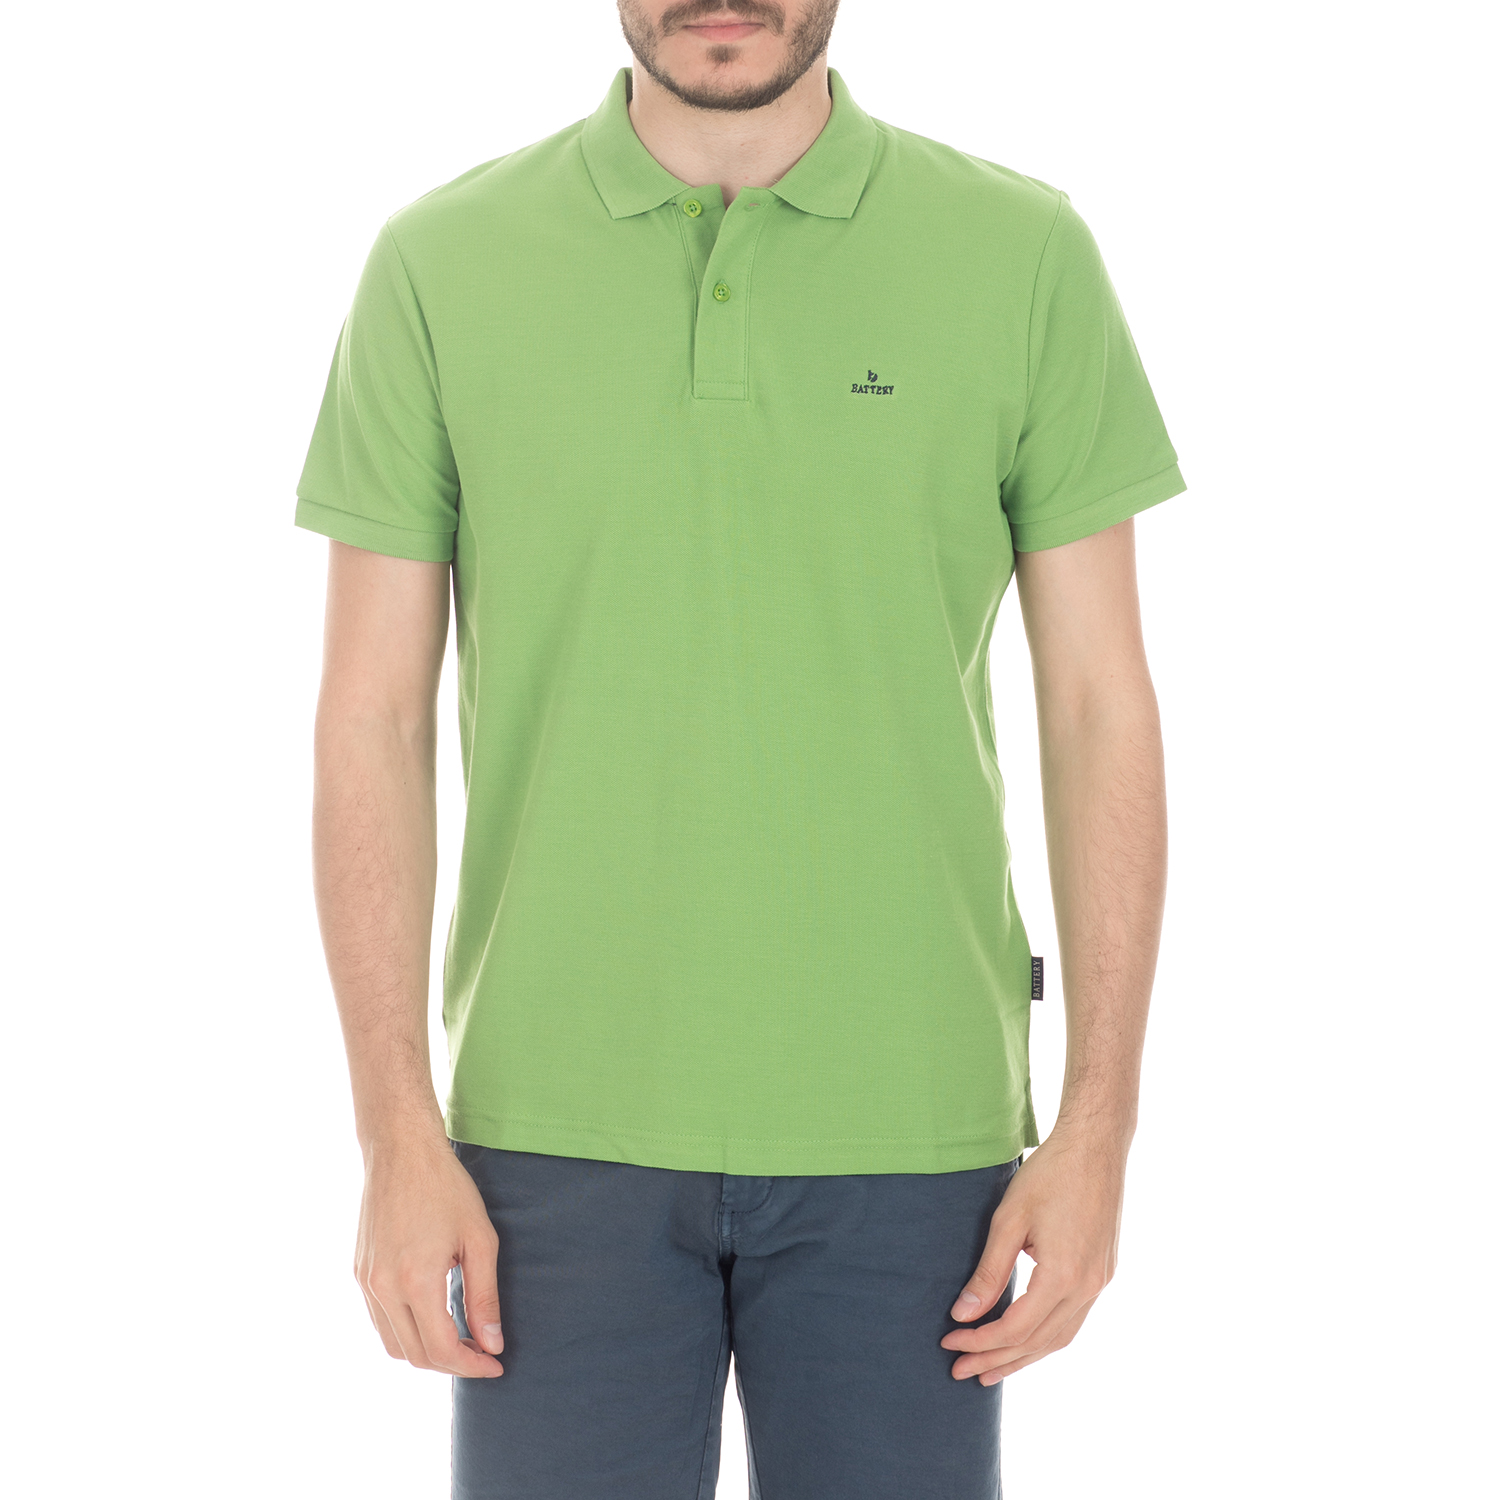 Ανδρικά/Ρούχα/Μπλούζες/Πόλο BATTERY - Ανδρική μπλούζα BATTERY πράσινη